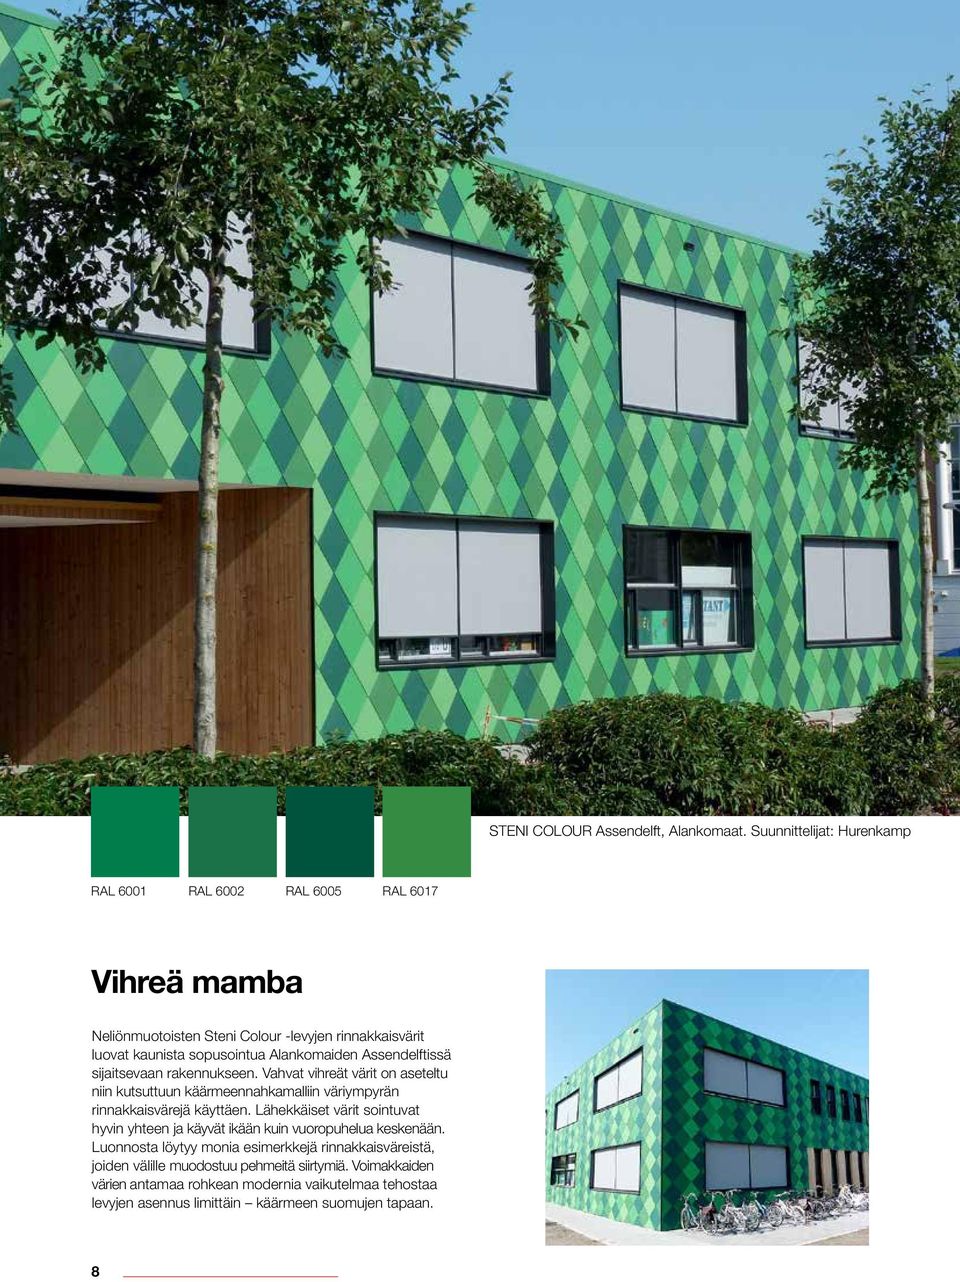 Alankomaiden Assendelftissä sijaitsevaan rakennukseen. Vahvat vihreät värit on aseteltu niin kutsuttuun käärmeennahkamalliin väriympyrän rinnakkaisvärejä käyttäen.